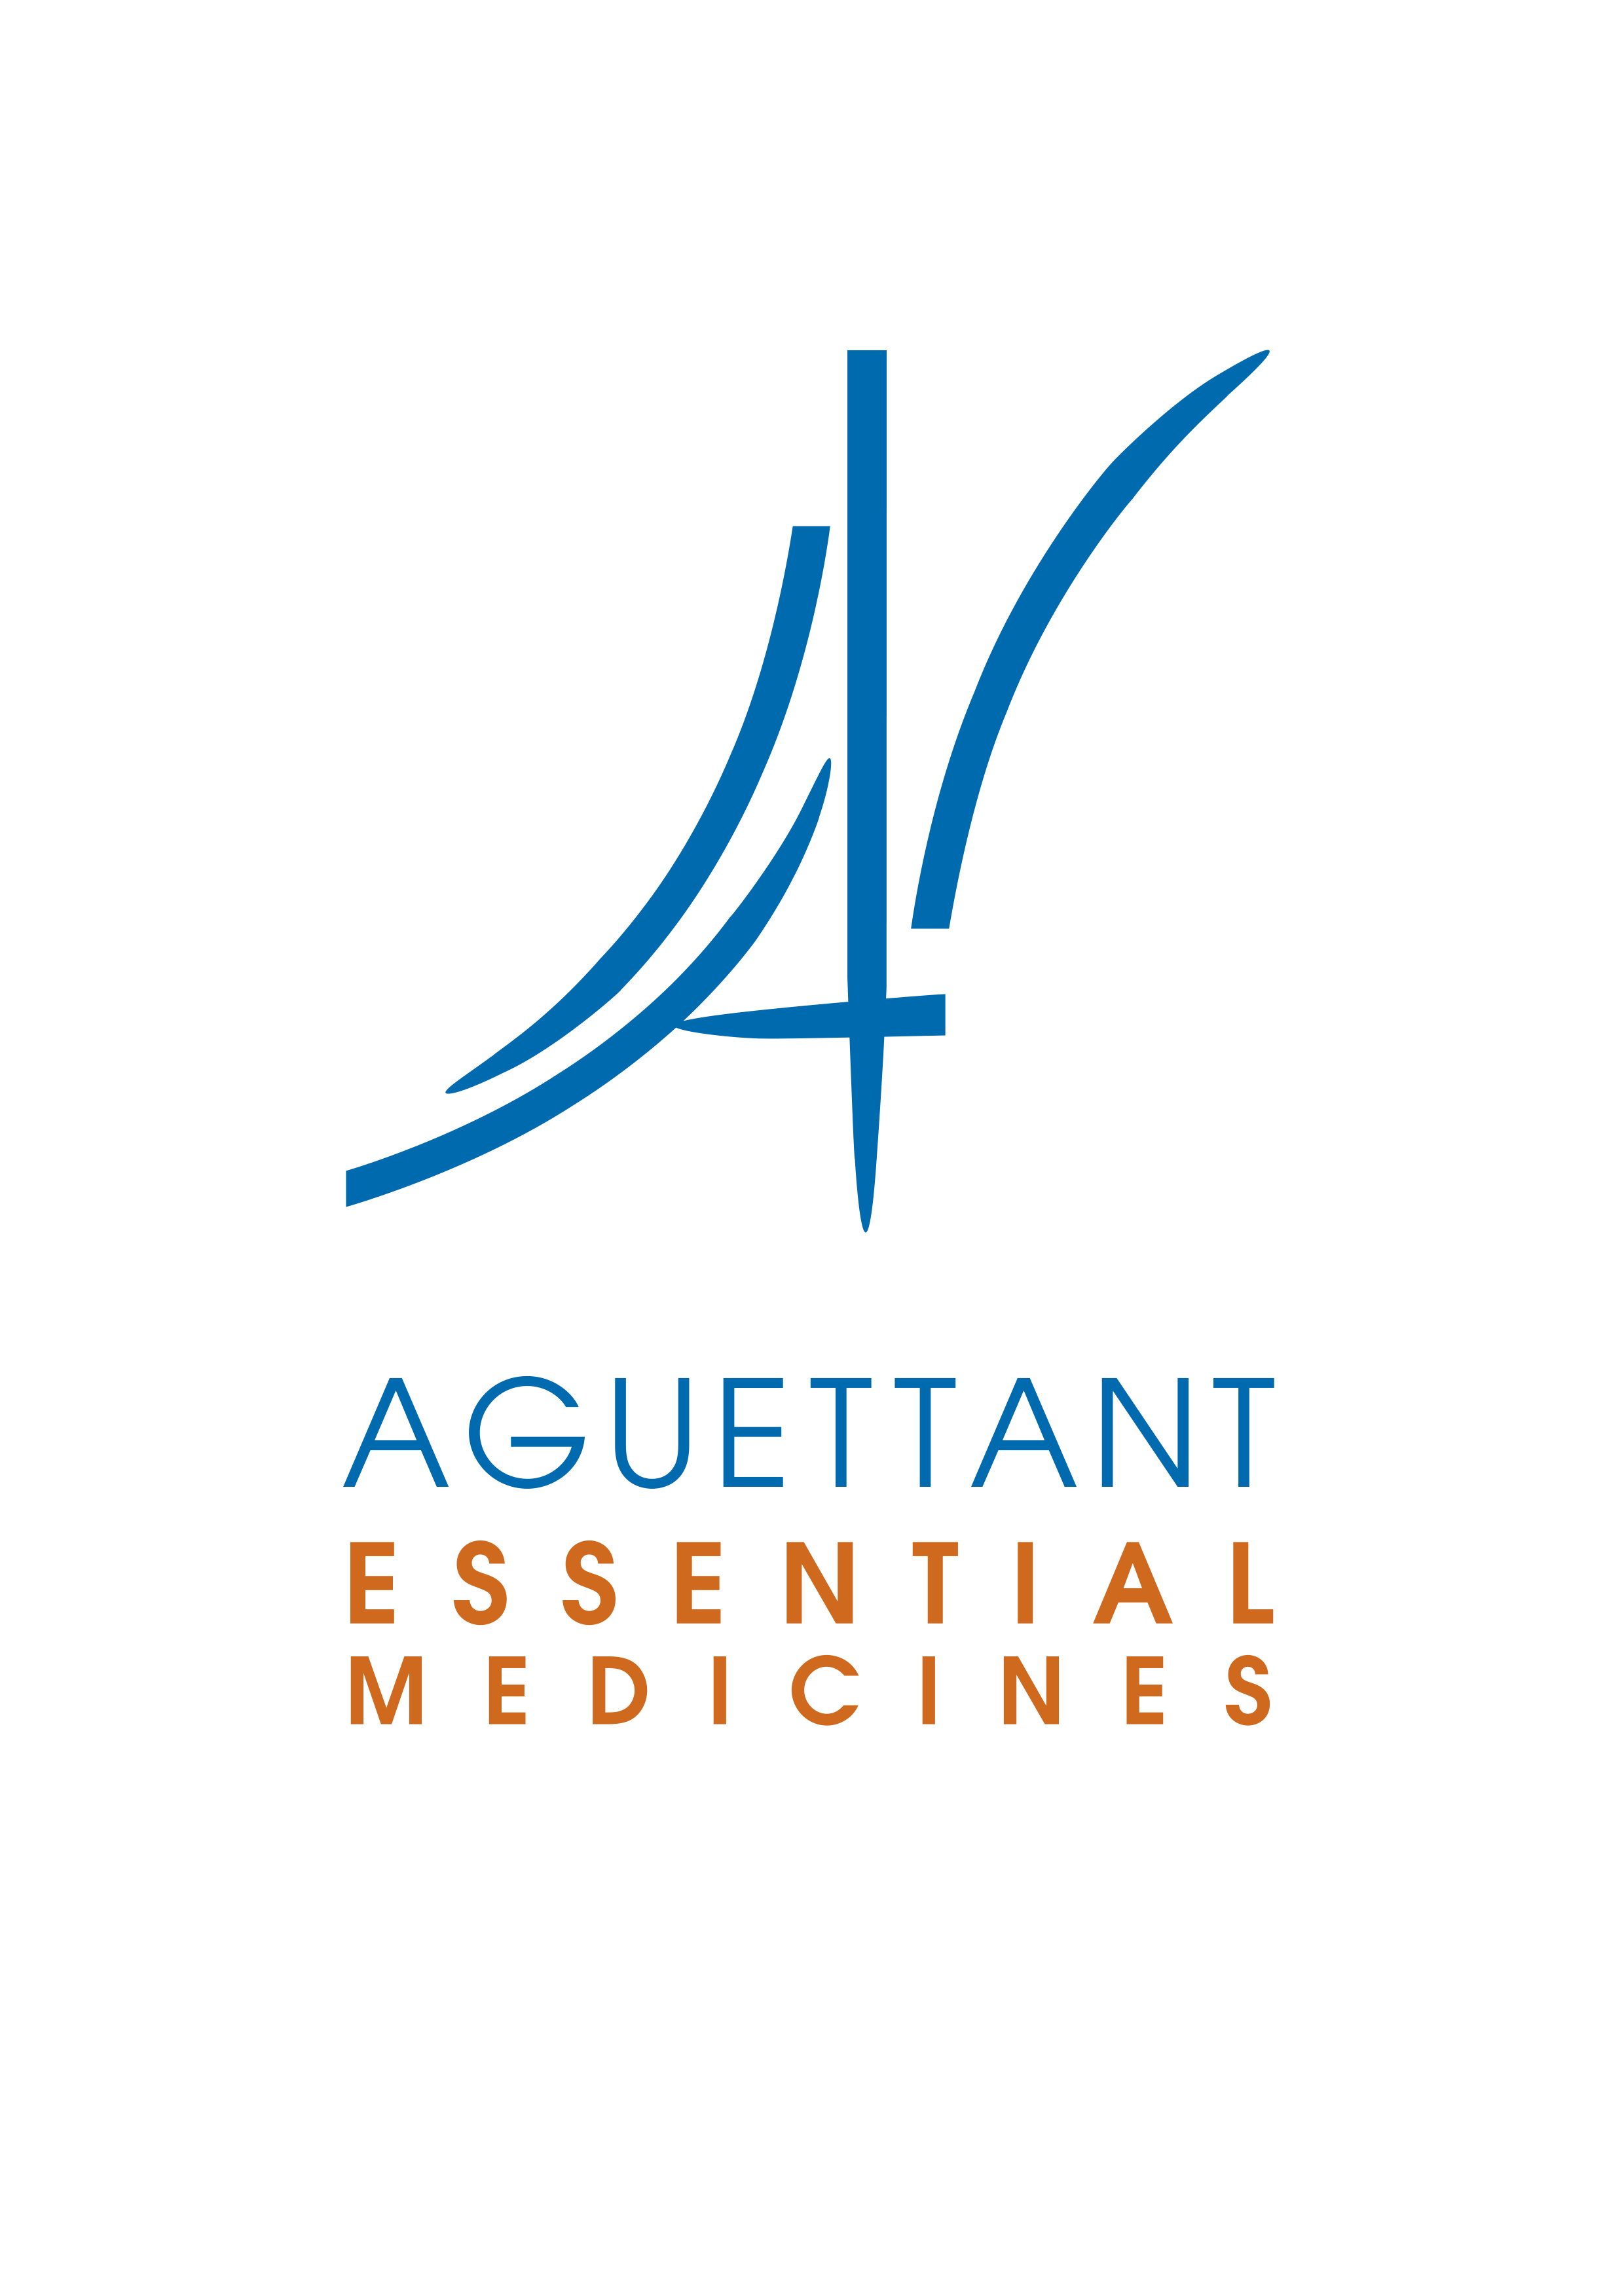 Aguettant Ltd